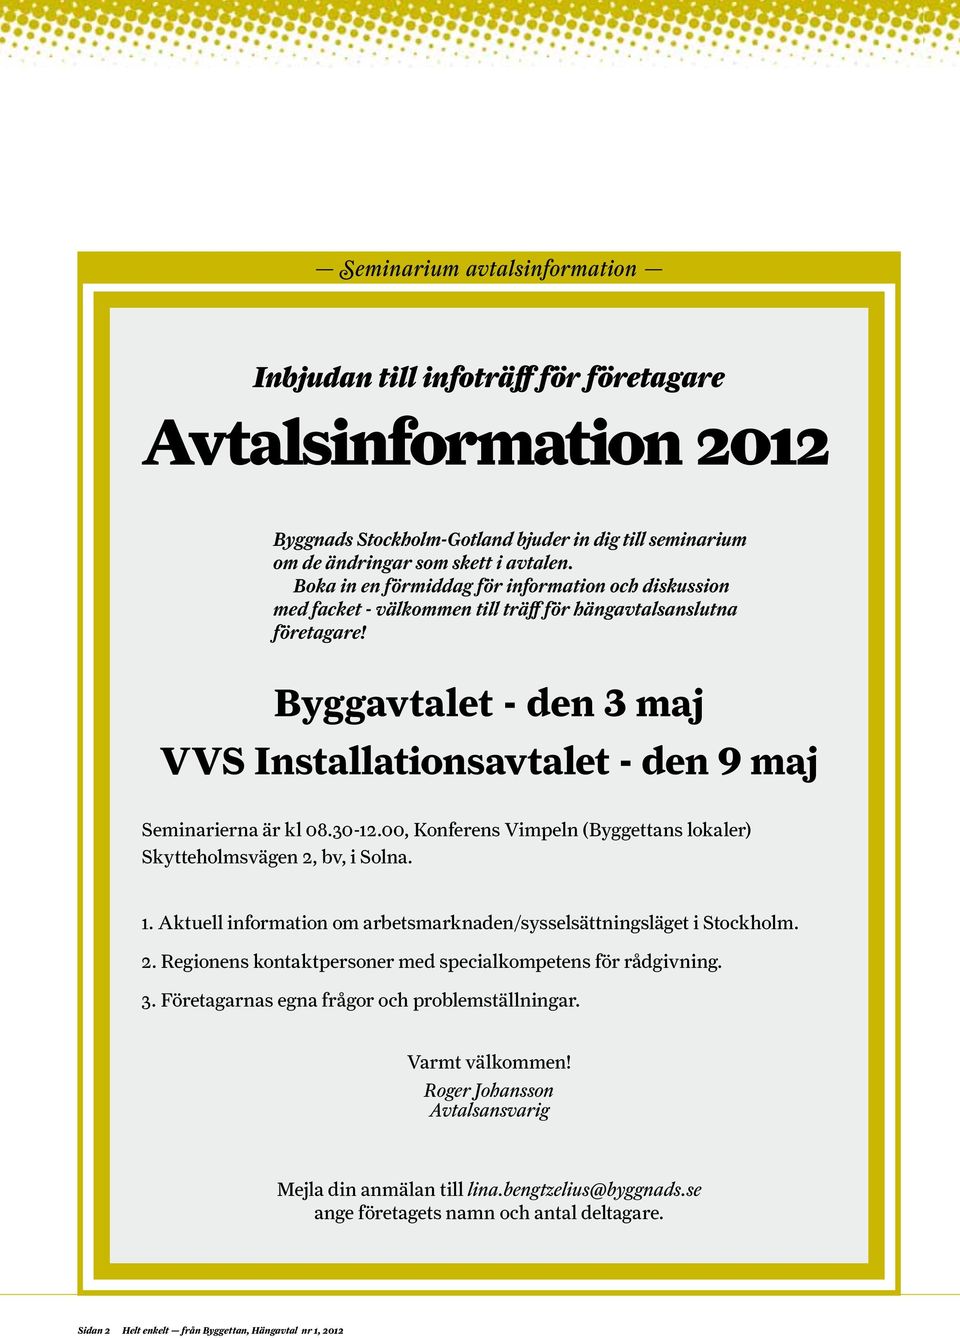 Byggavtalet - den 3 maj VVS Installationsavtalet - den 9 maj Seminarierna är kl 08.30-12.00, Konferens Vimpeln (Byggettans lokaler) Skytteholmsvägen 2, bv, i Solna. 1.